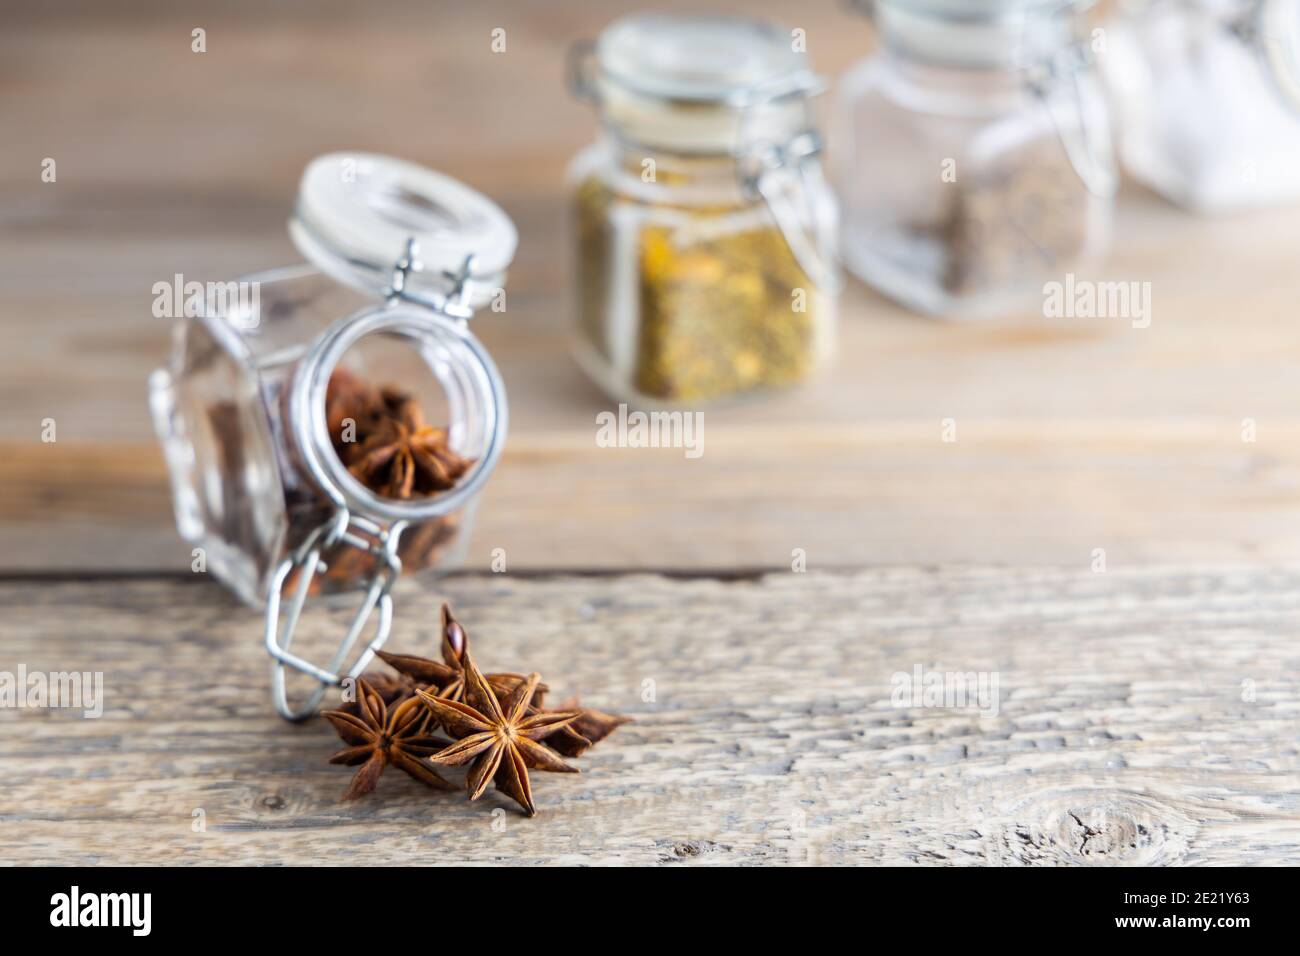 Une épice communément appelée anis étoilé, la staranise, la graine d'anis étoilé, l'anis étoilé chinois, le badian qui ressemble étroitement à l'anis dans la saveur. Banque D'Images